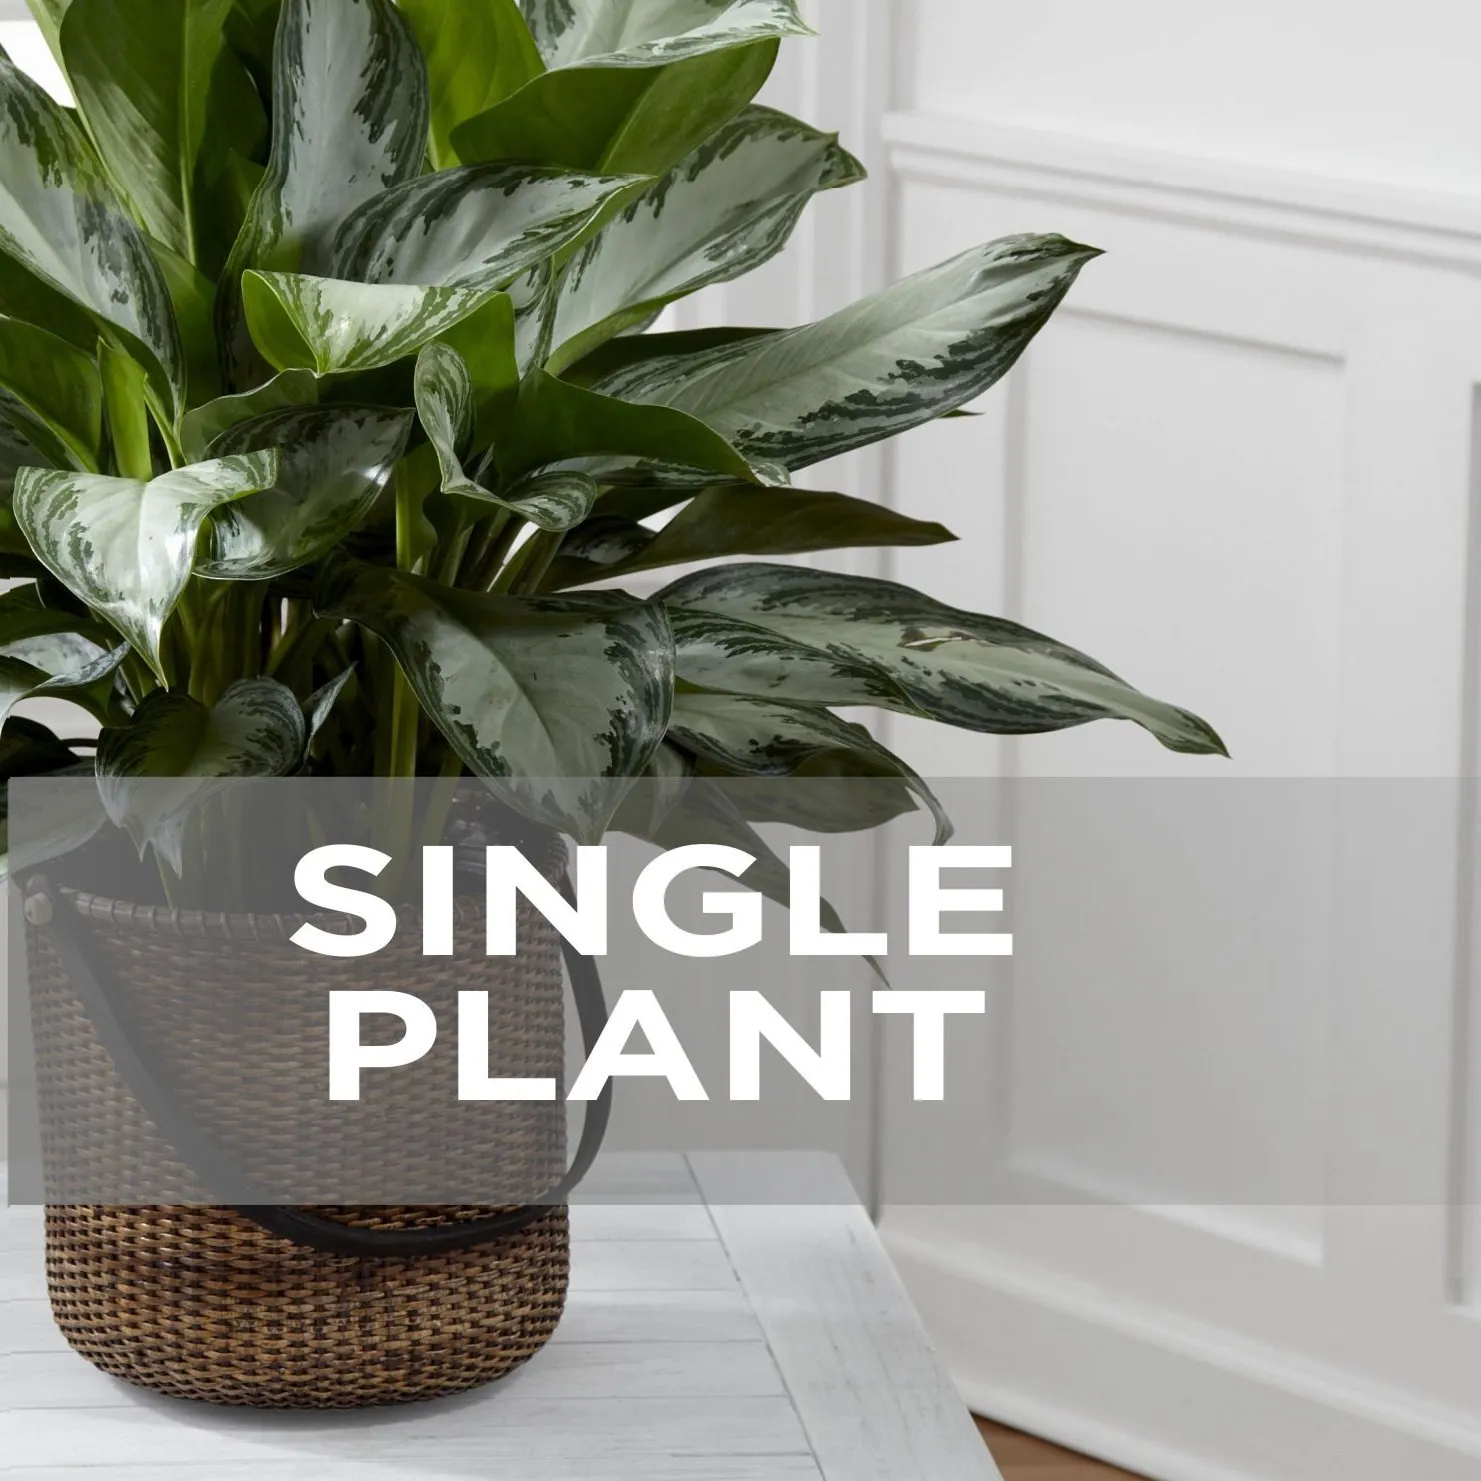 Single Plant - Costa Rica